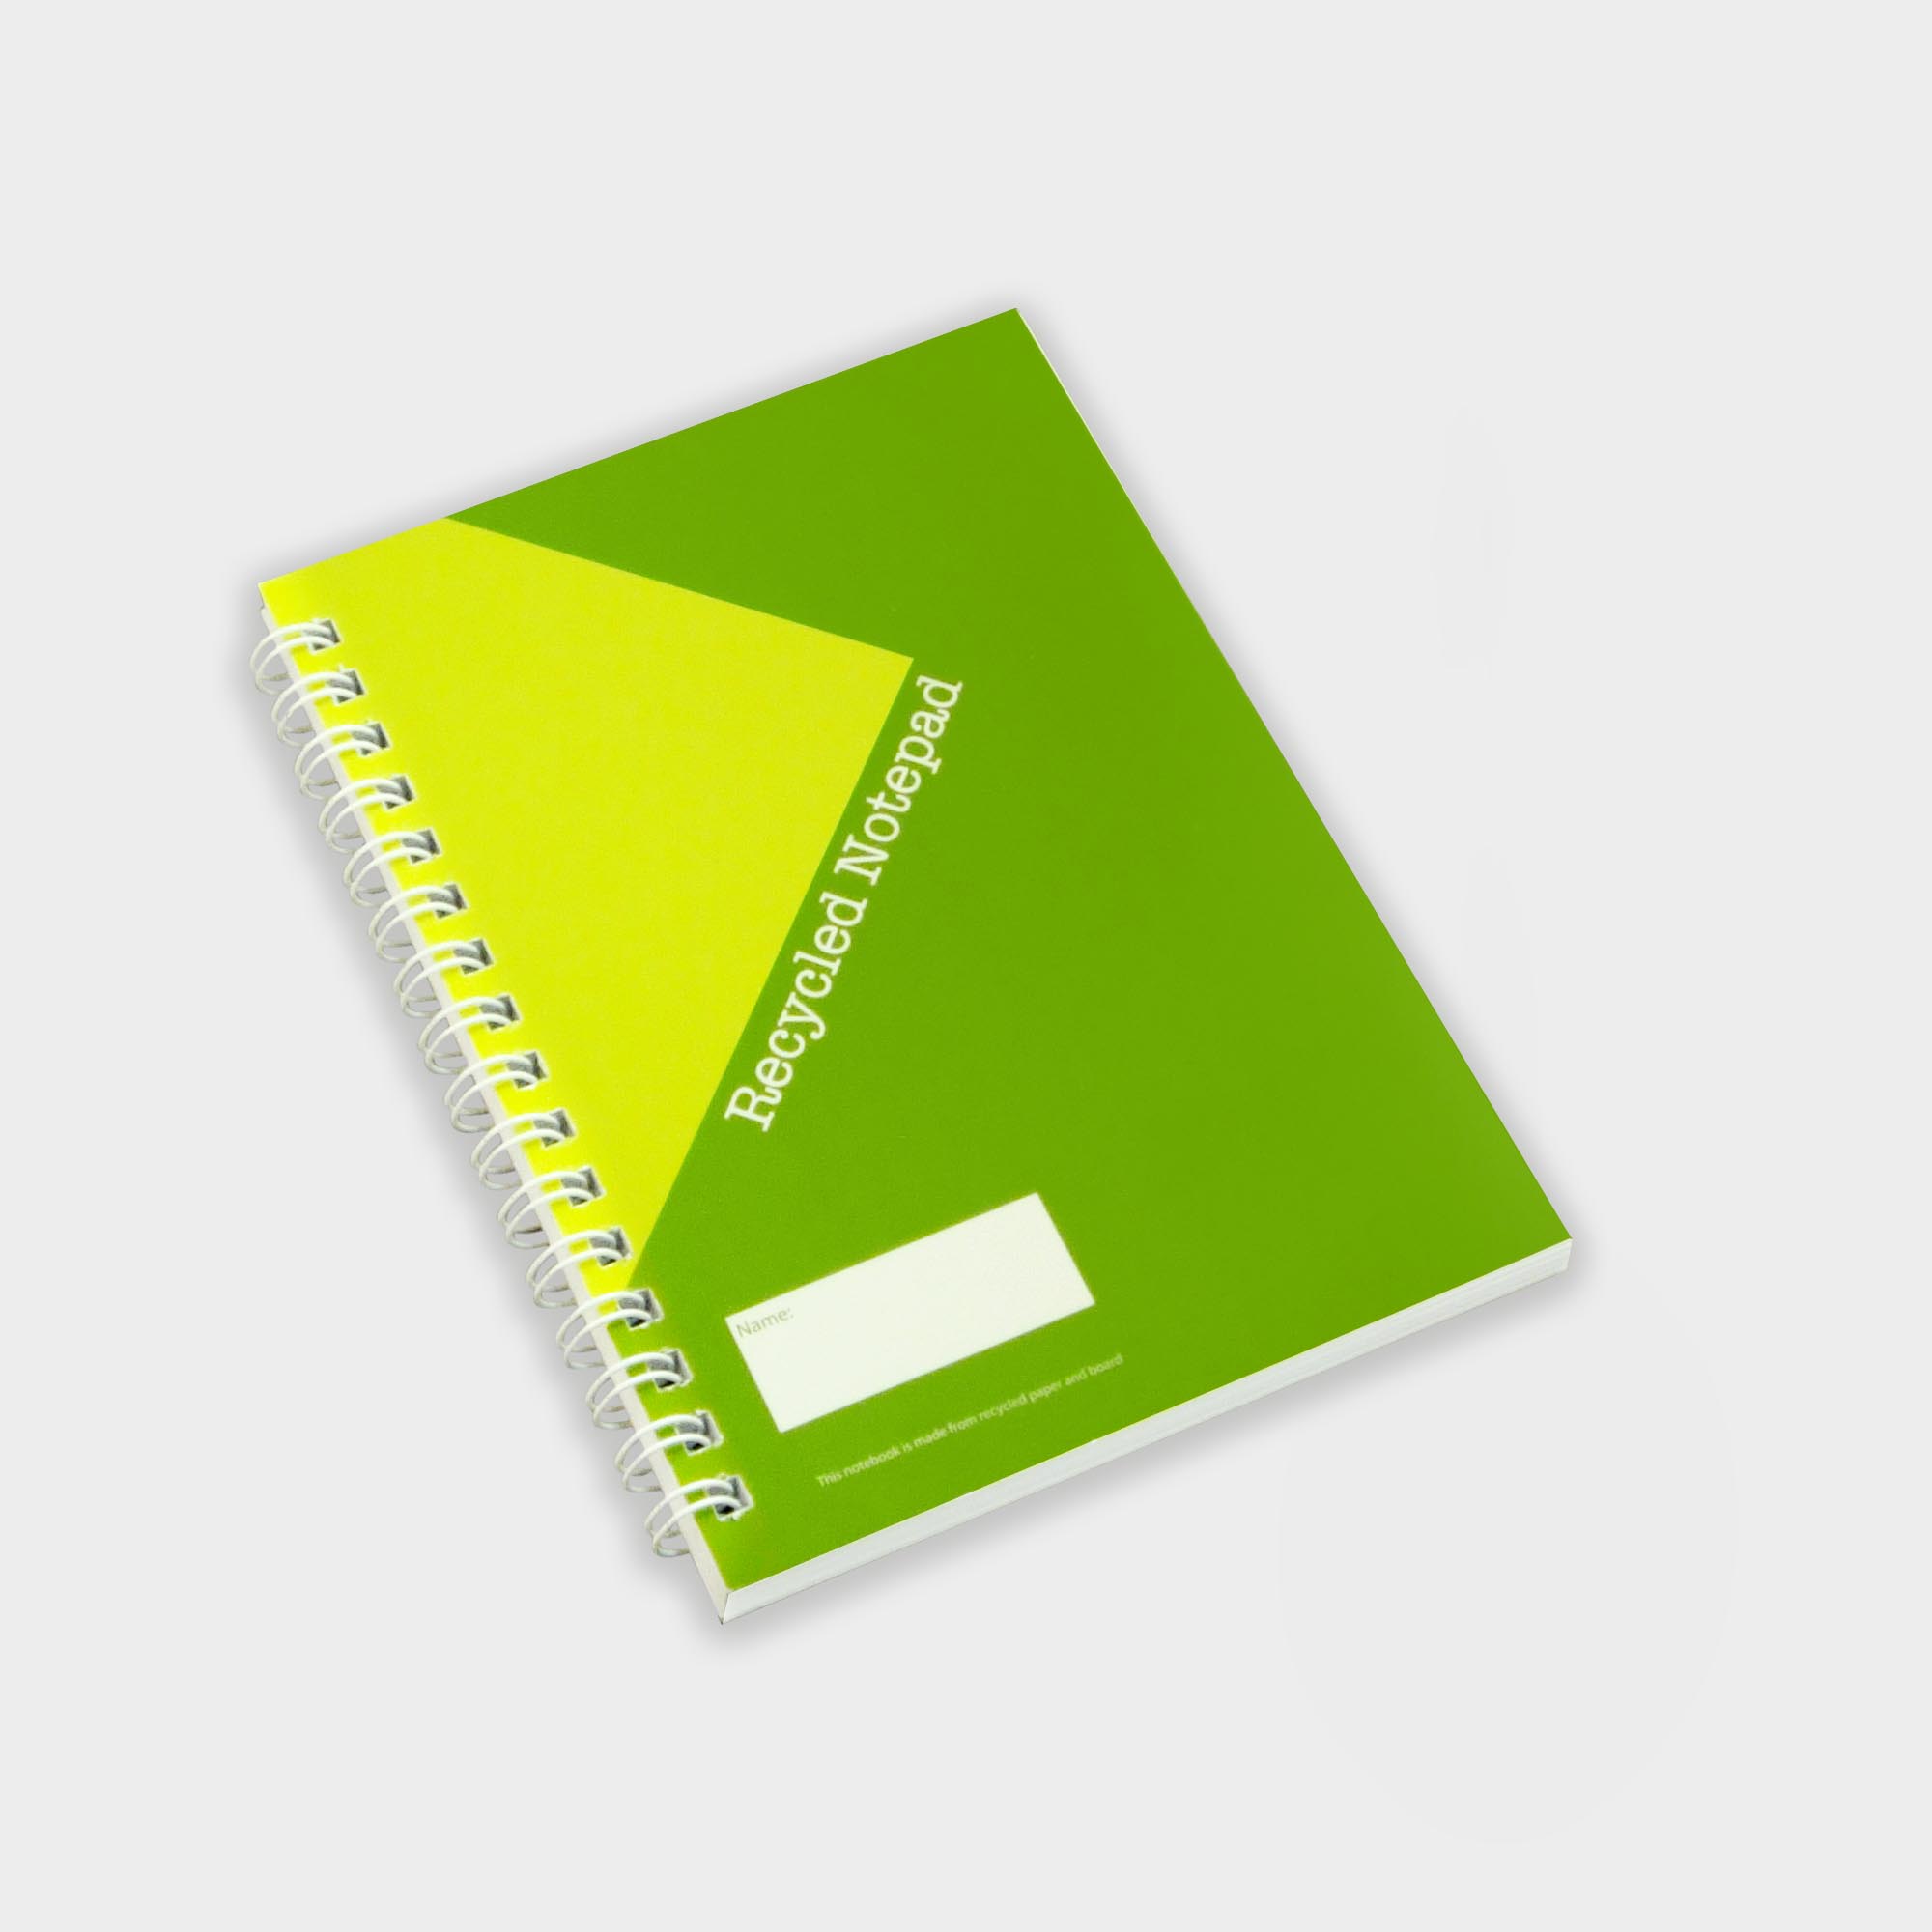 Das ringgebundene Green & Good A6 Notizbuch aus recyceltem Papier und Karton.